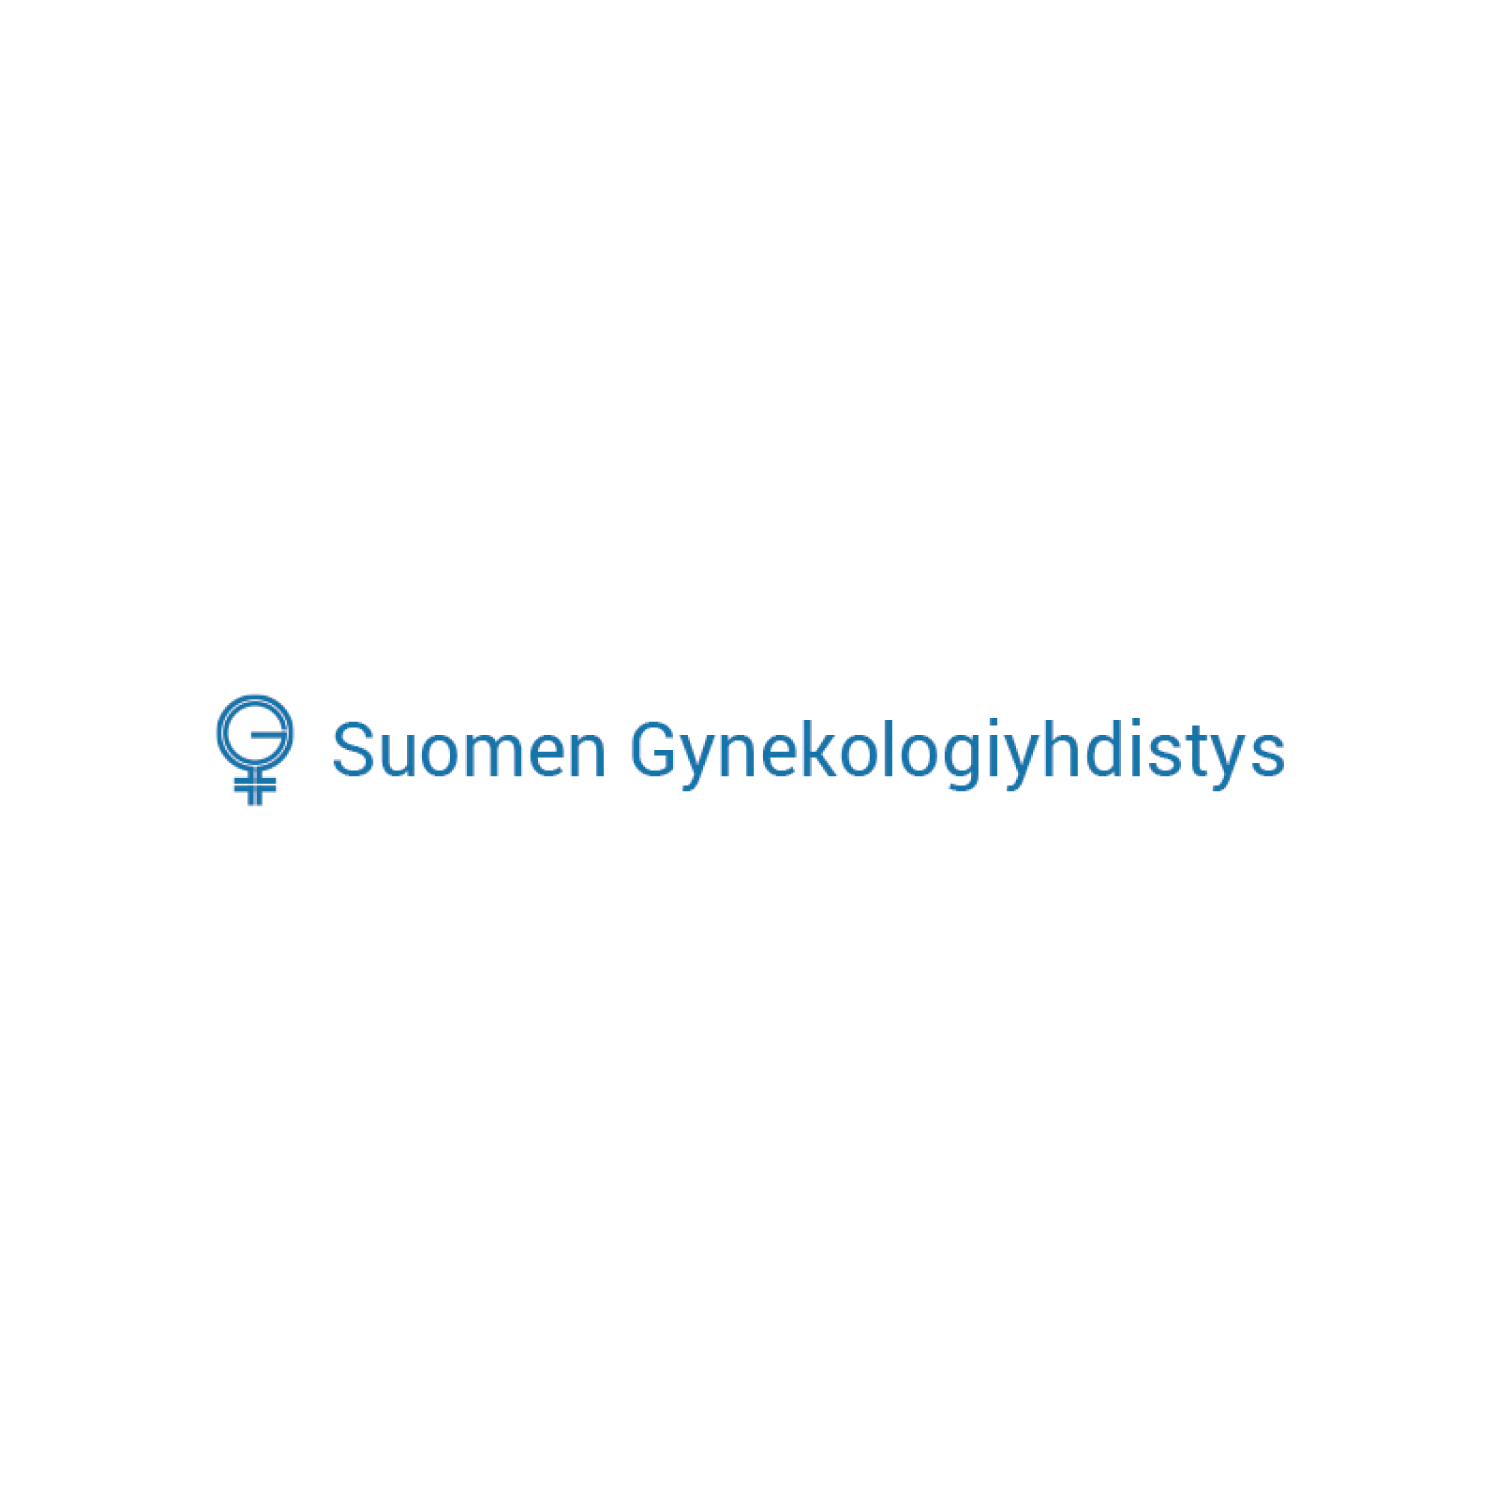 Suomen gynekologiyhdistys